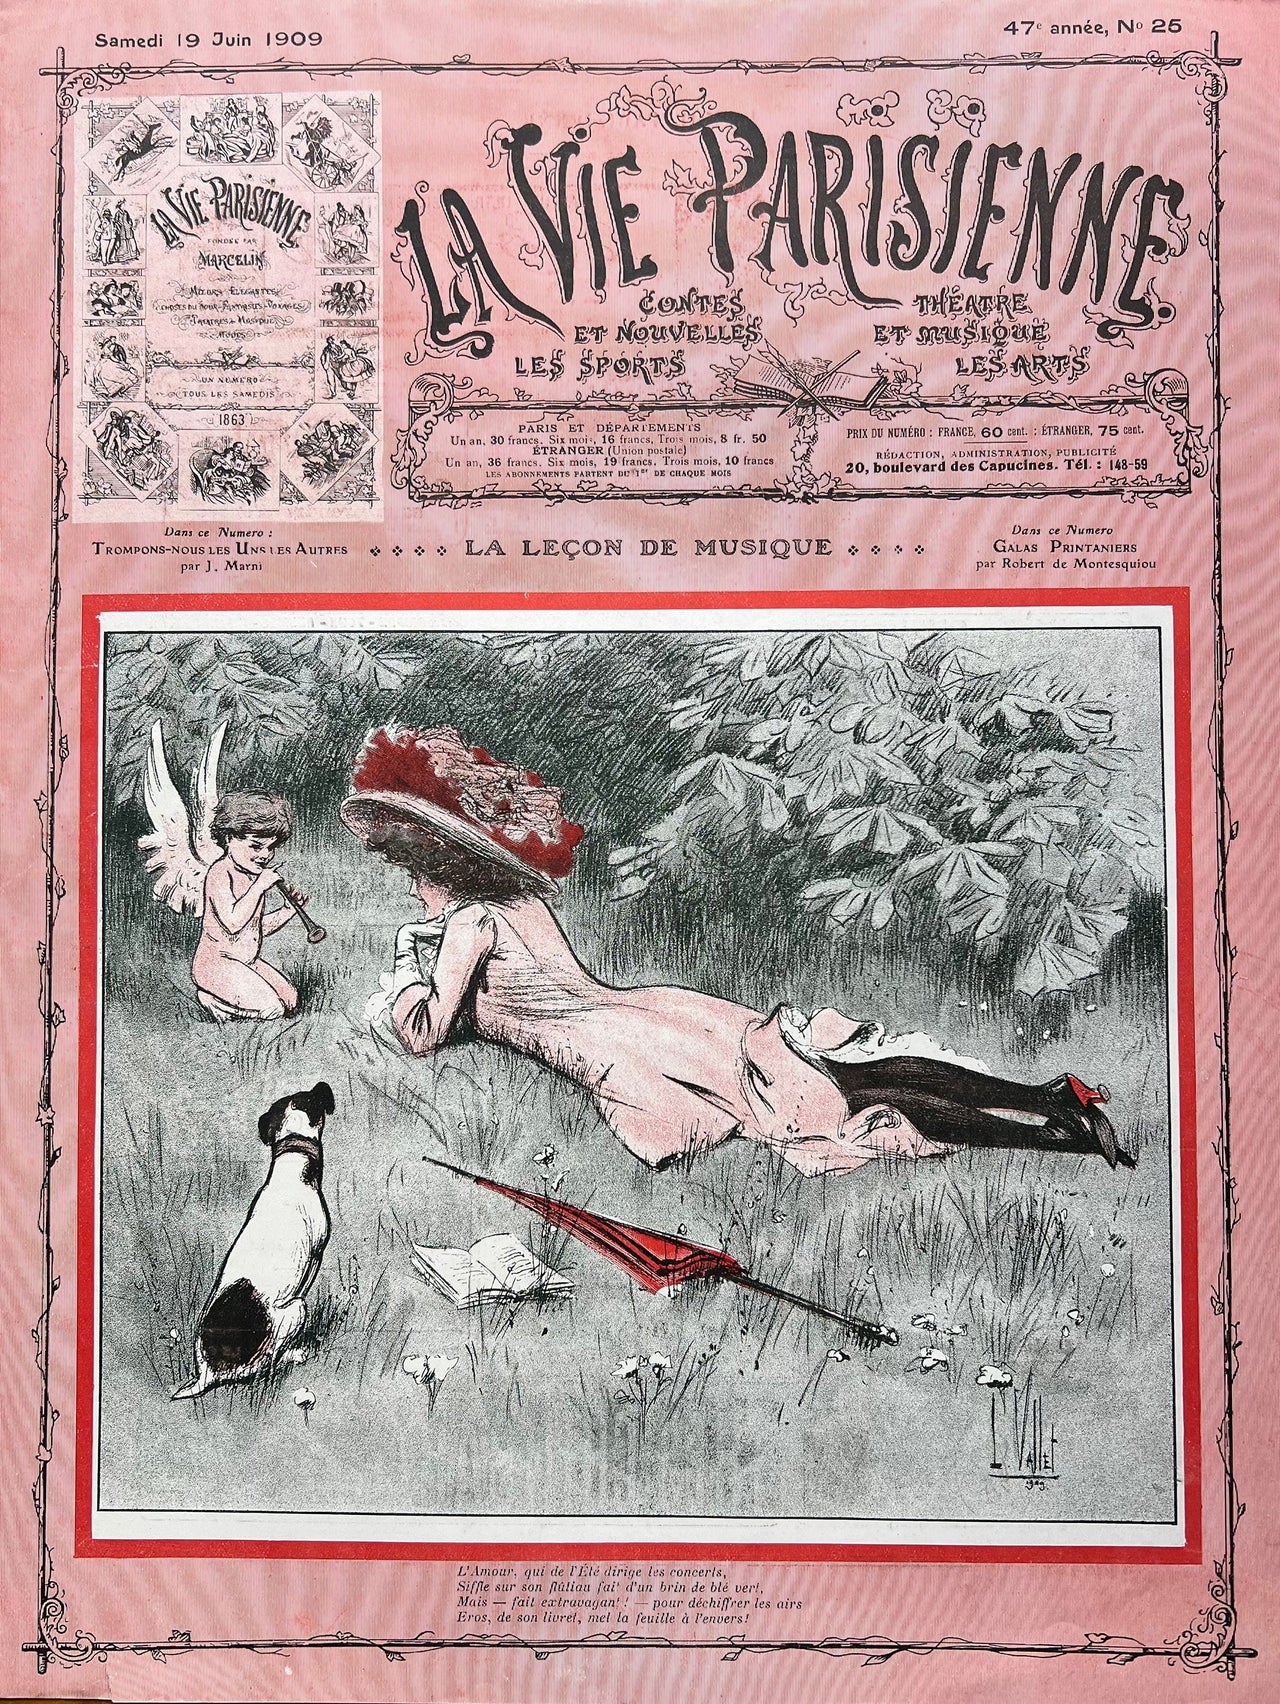 1909 La Vie Parisienne Print